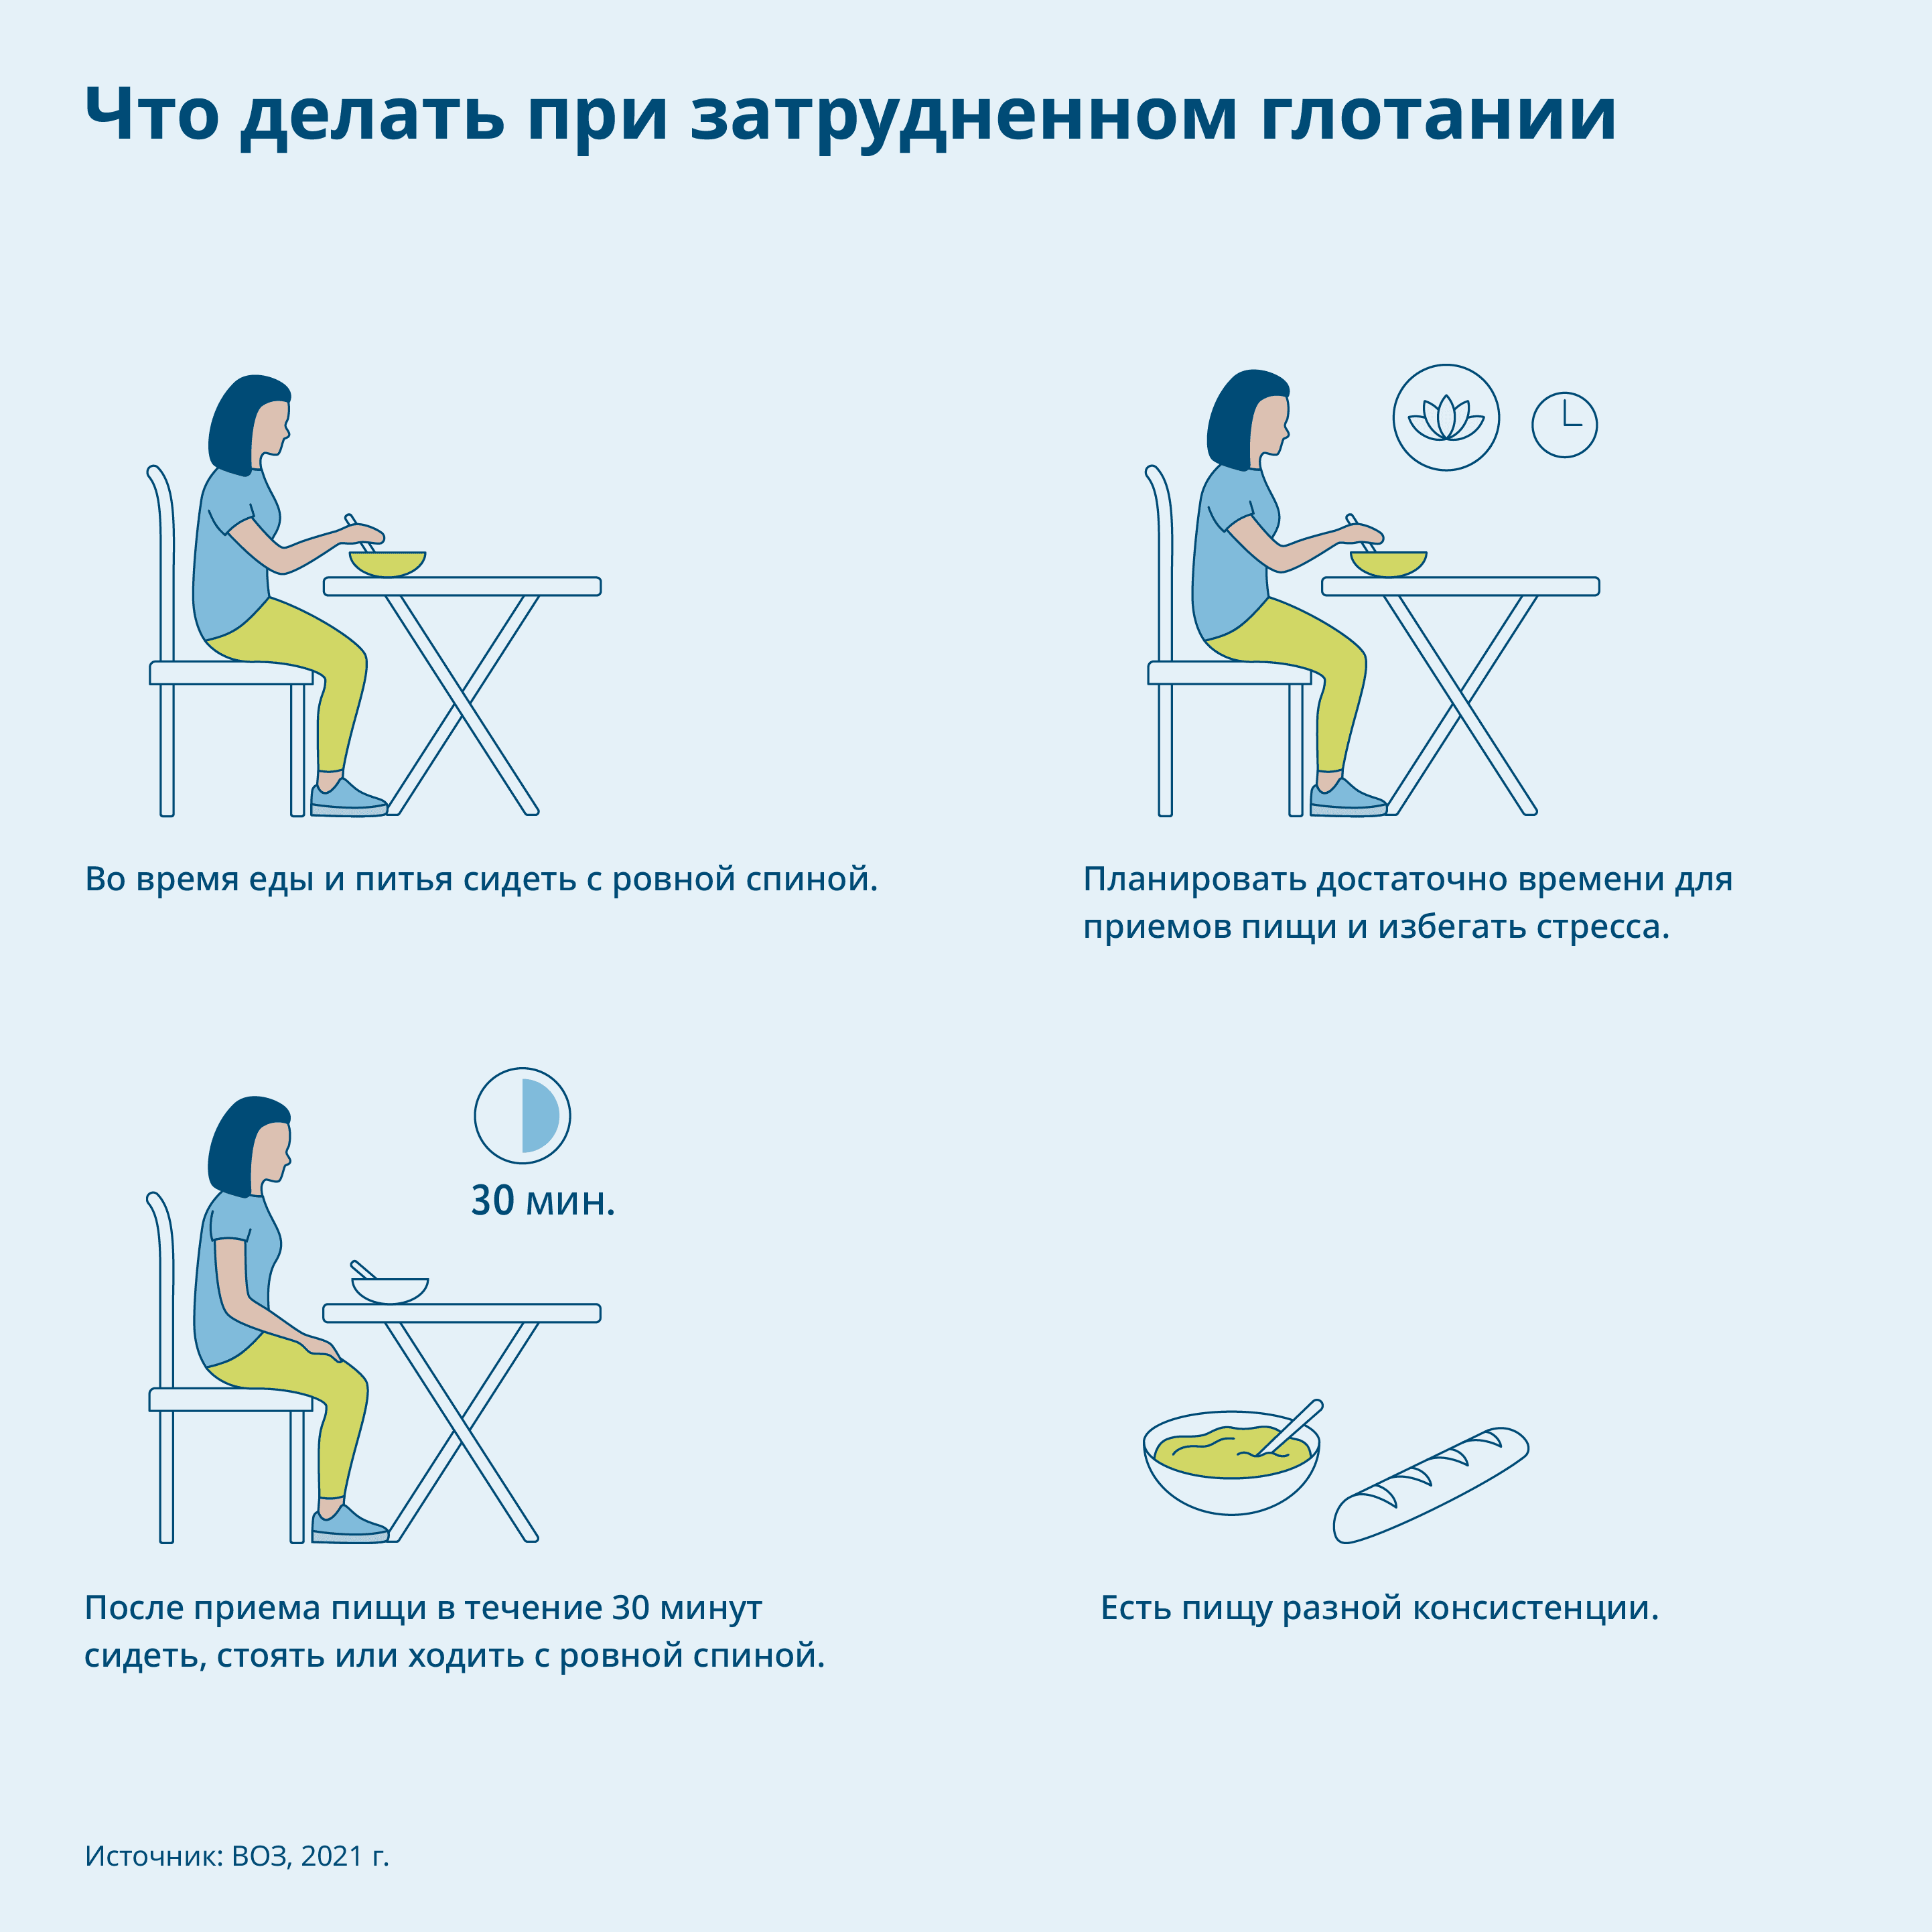 Графика: Советы по преодолению трудностей при глотании, человек изображен в различных сидячих положениях